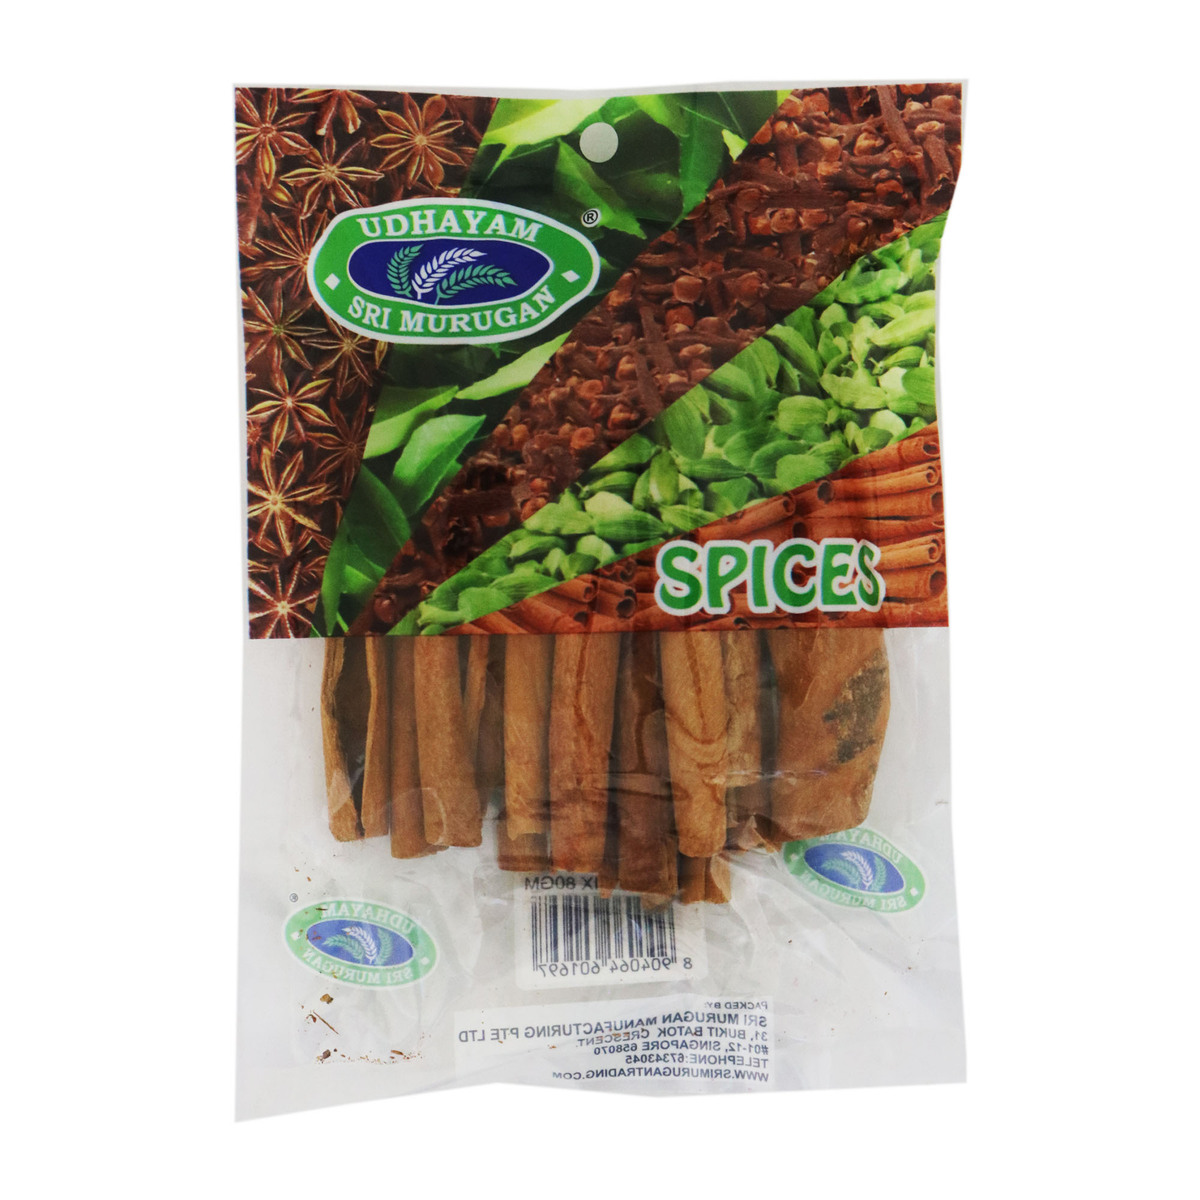 Sri murugan cinnamon stick